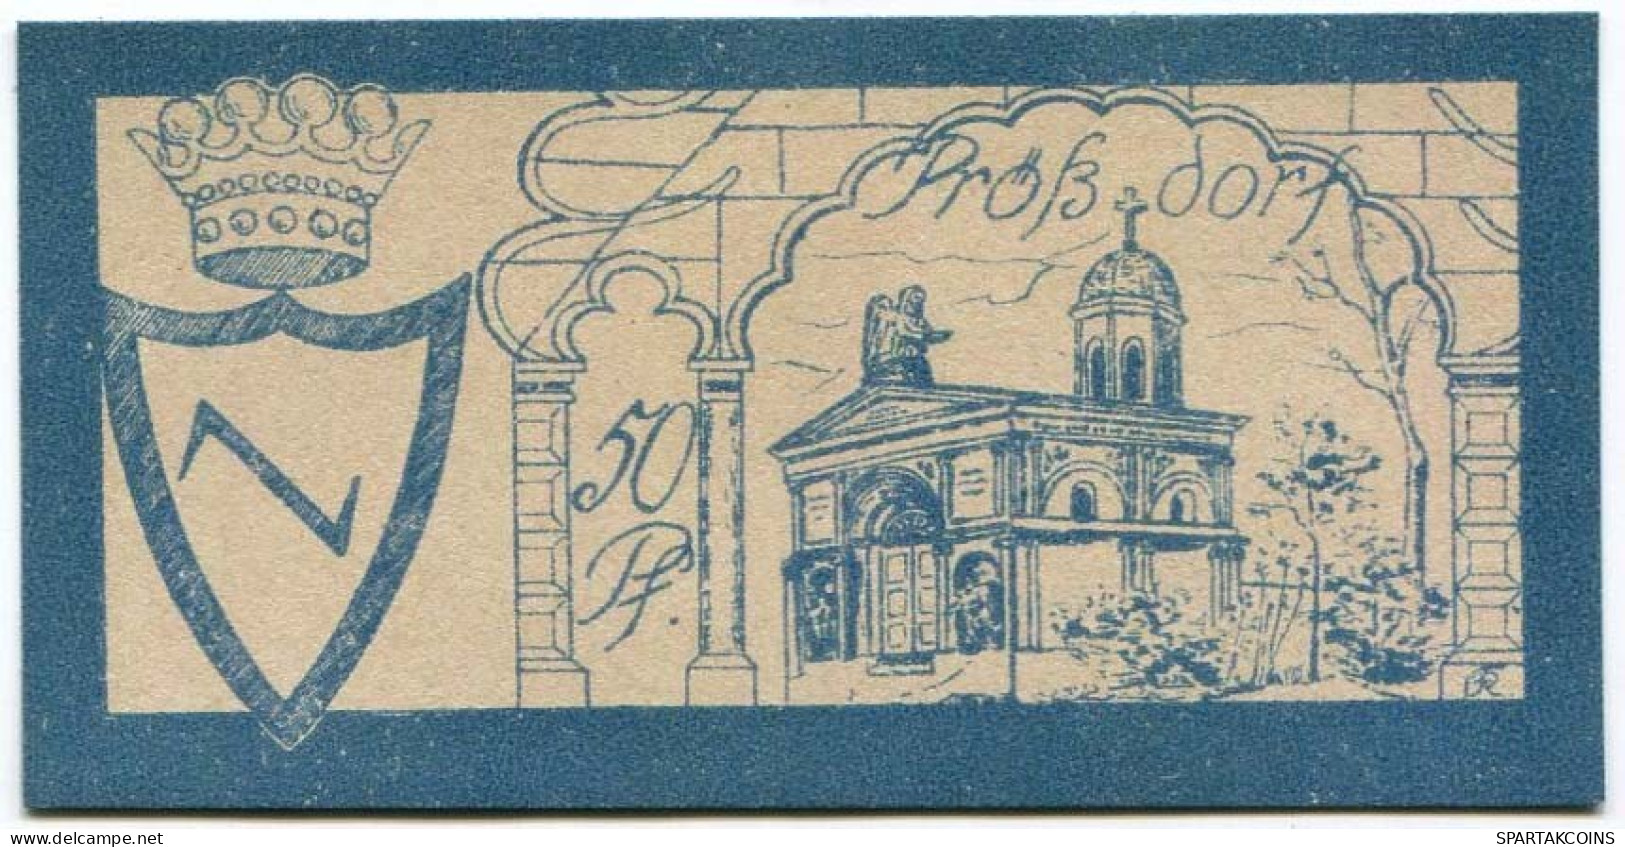 50 PFENNIG 1922 Stadt PRoSSDORF Thuringia DEUTSCHLAND Notgeld Papiergeld Banknote #PL922 - Lokale Ausgaben